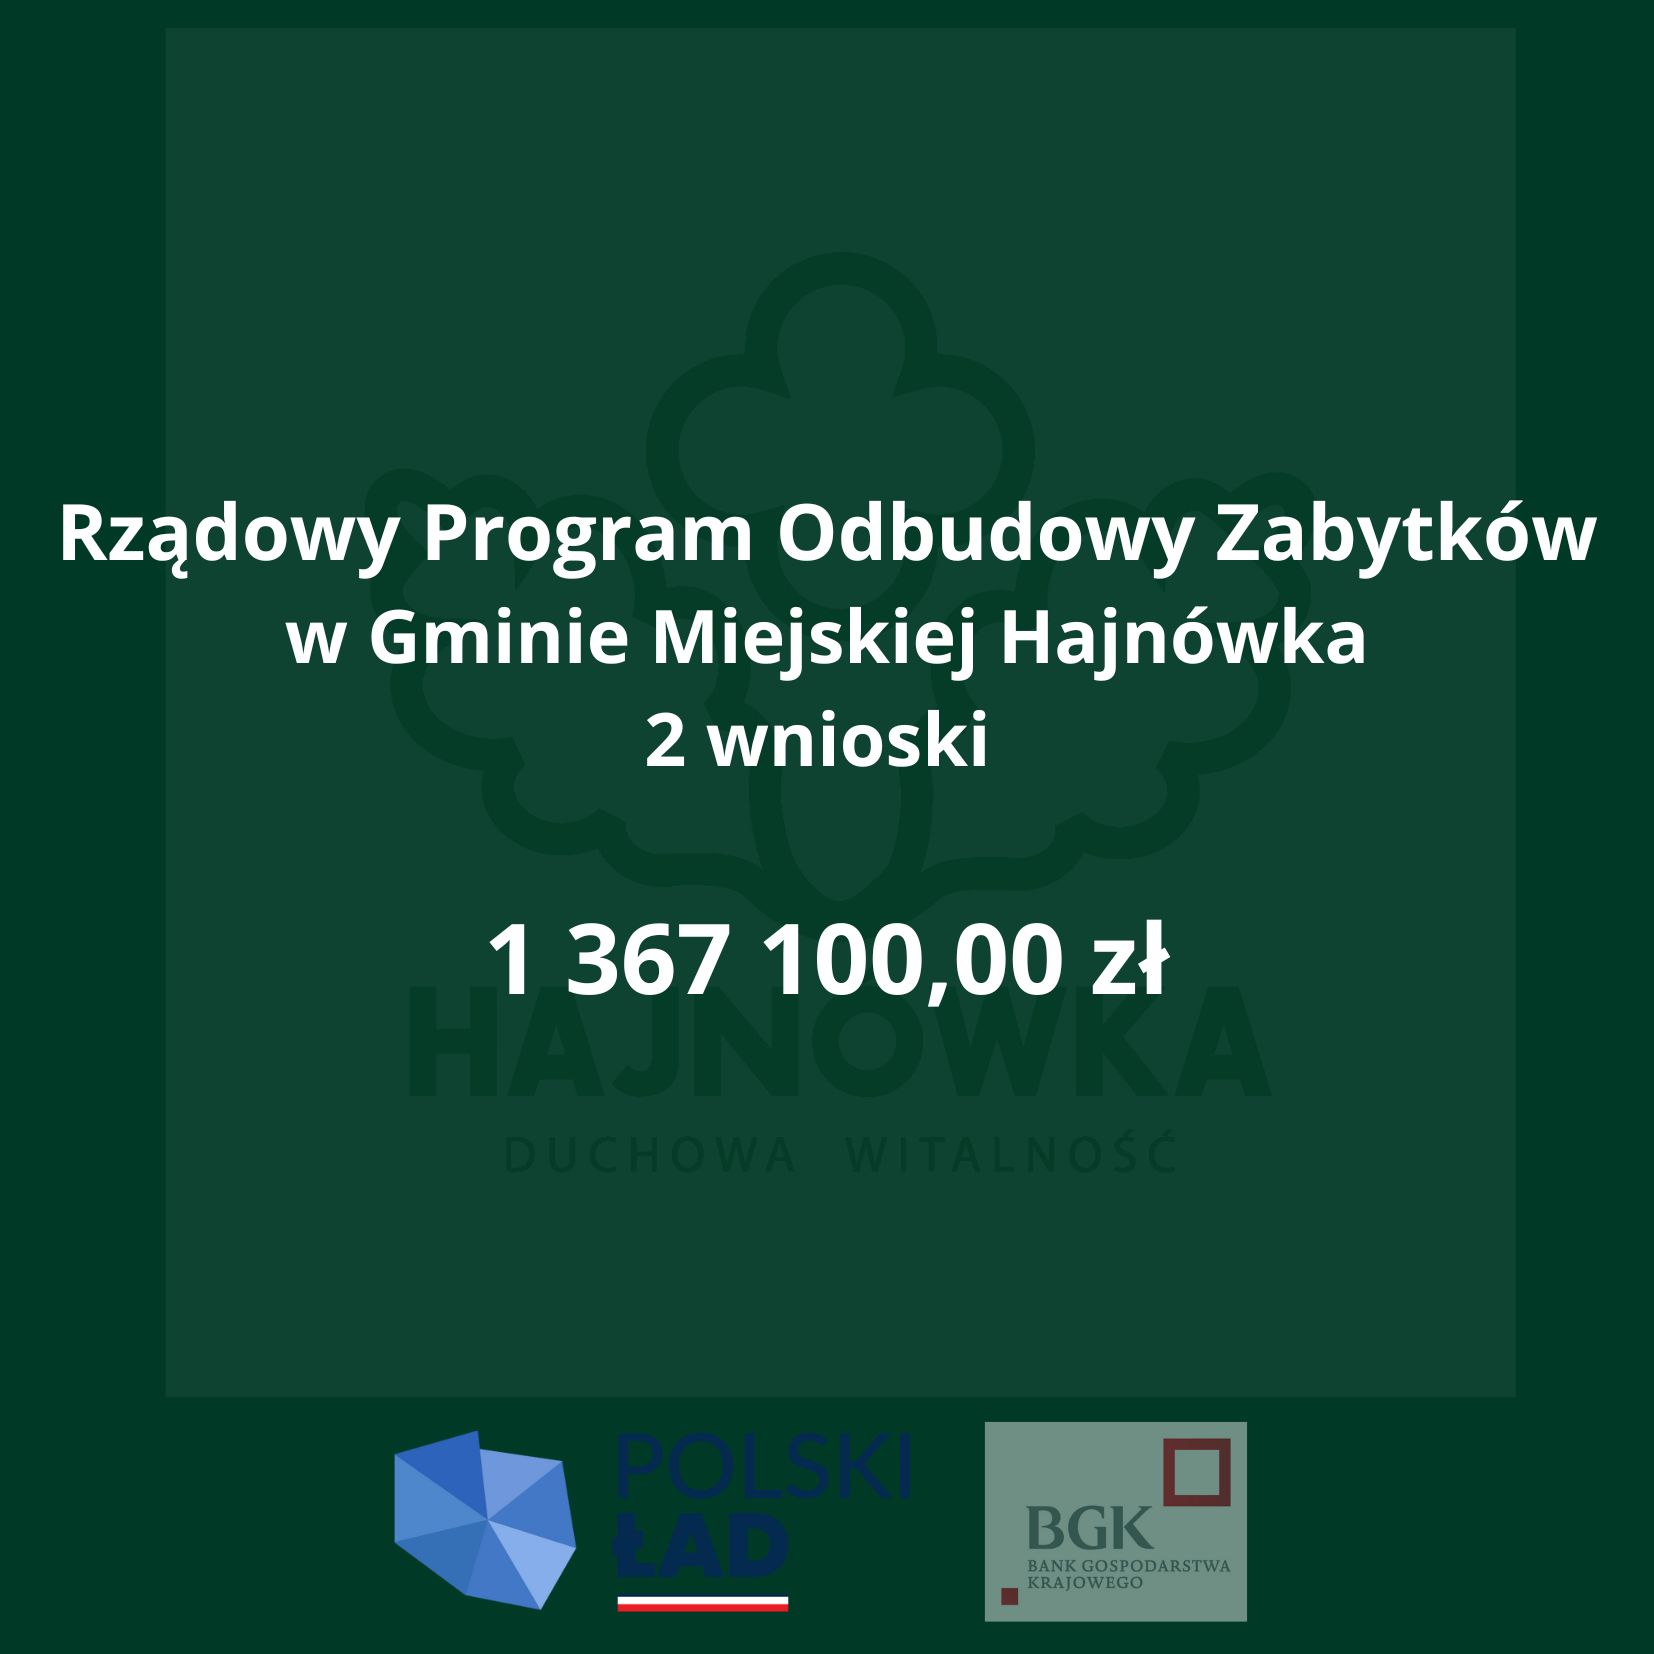 na ciemno zielonym tle, w które wkomponowane jest logo miasta Hajnówka, biały tekst, u dołu logo programu Polski Ład oraz Banku Gopodarstwa Krajowego